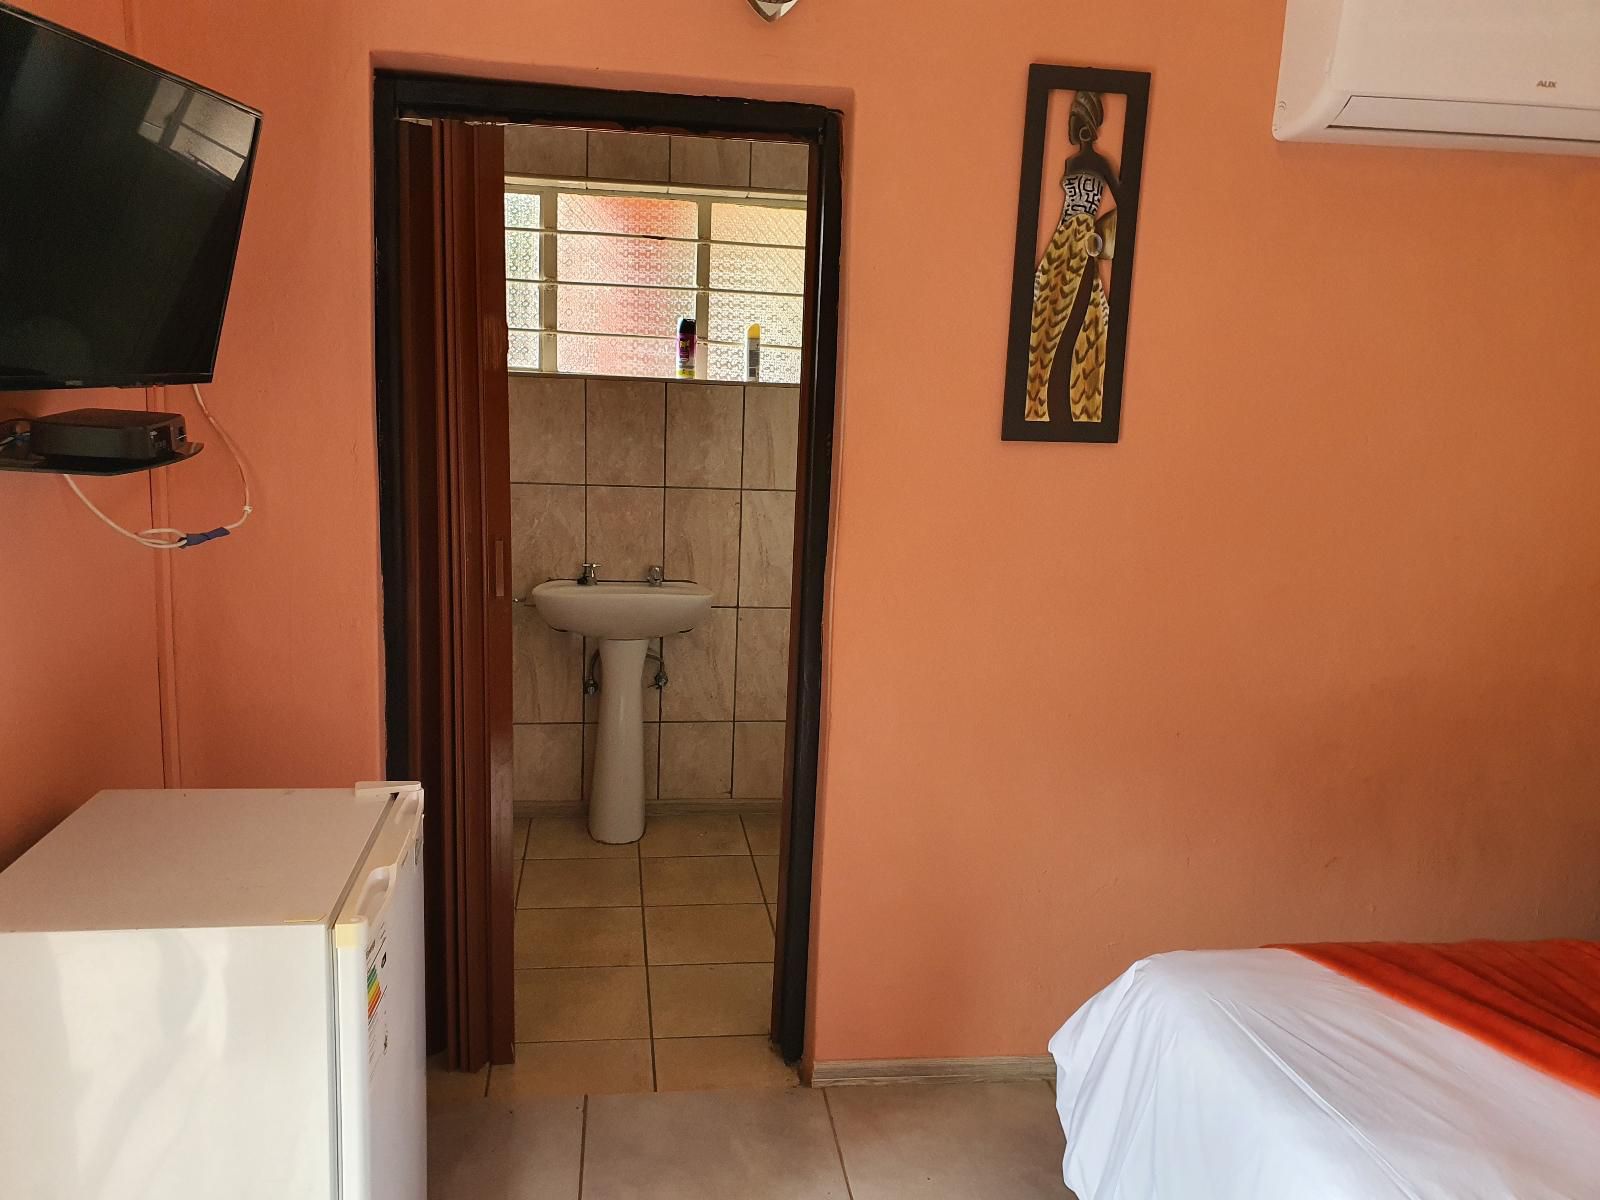 R S Gardens Thohoyandou Limpopo Province South Africa Bathroom